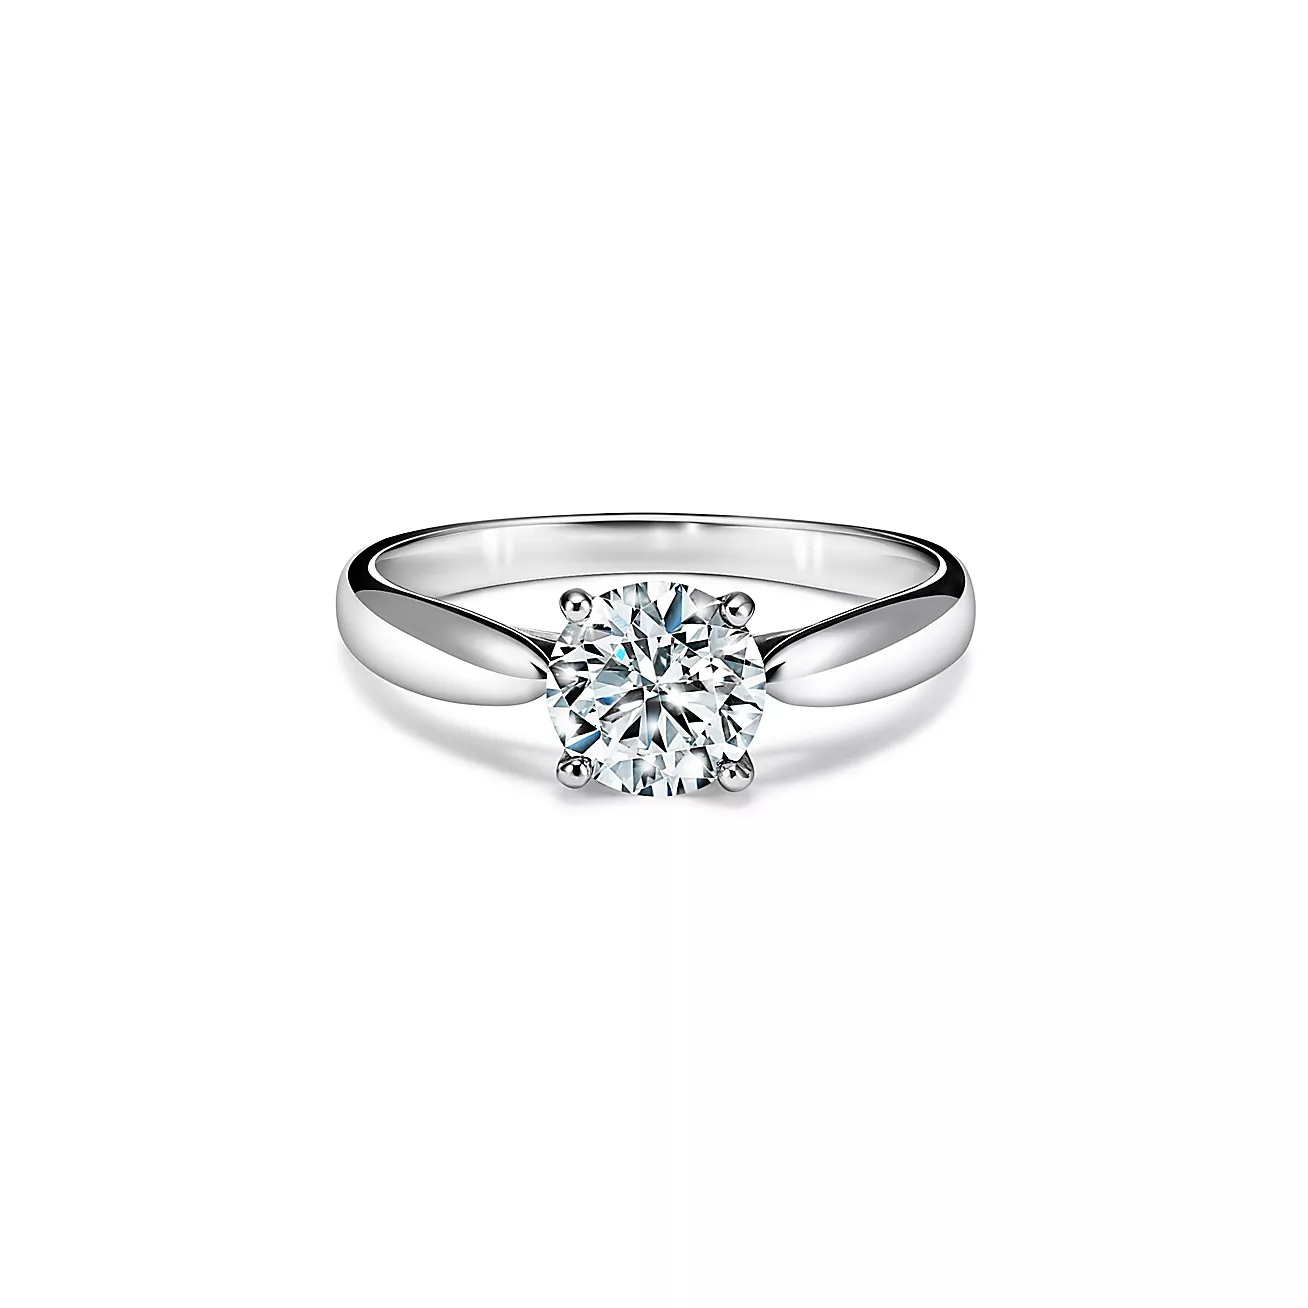 結婚10周年のお祝いにダイヤモンドジュエリーを贈る「スイートテンダイヤモンド」の妻・奥様へのおすすめのダイヤモンドのリングはTIFFANY & Co.のハーモニーリング